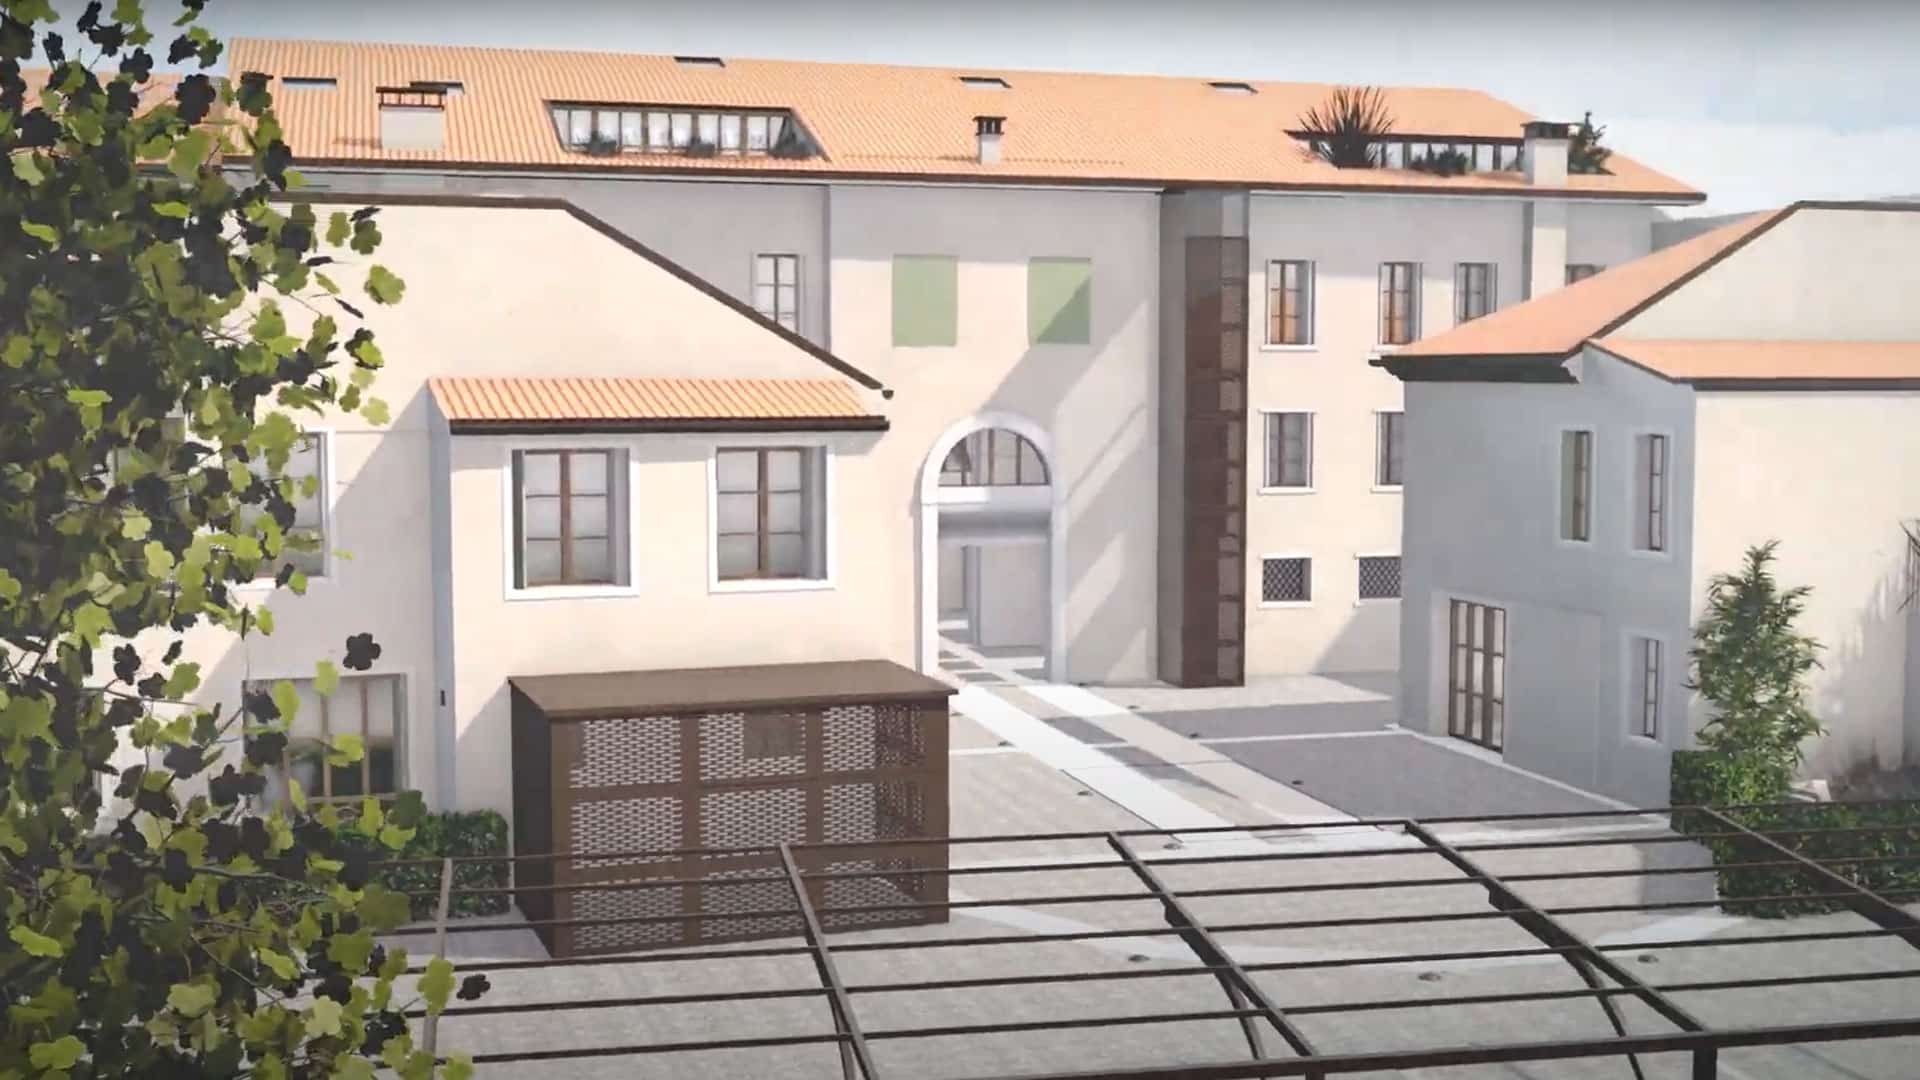 LDLBUILDING - Video di Prodotto Architettonico